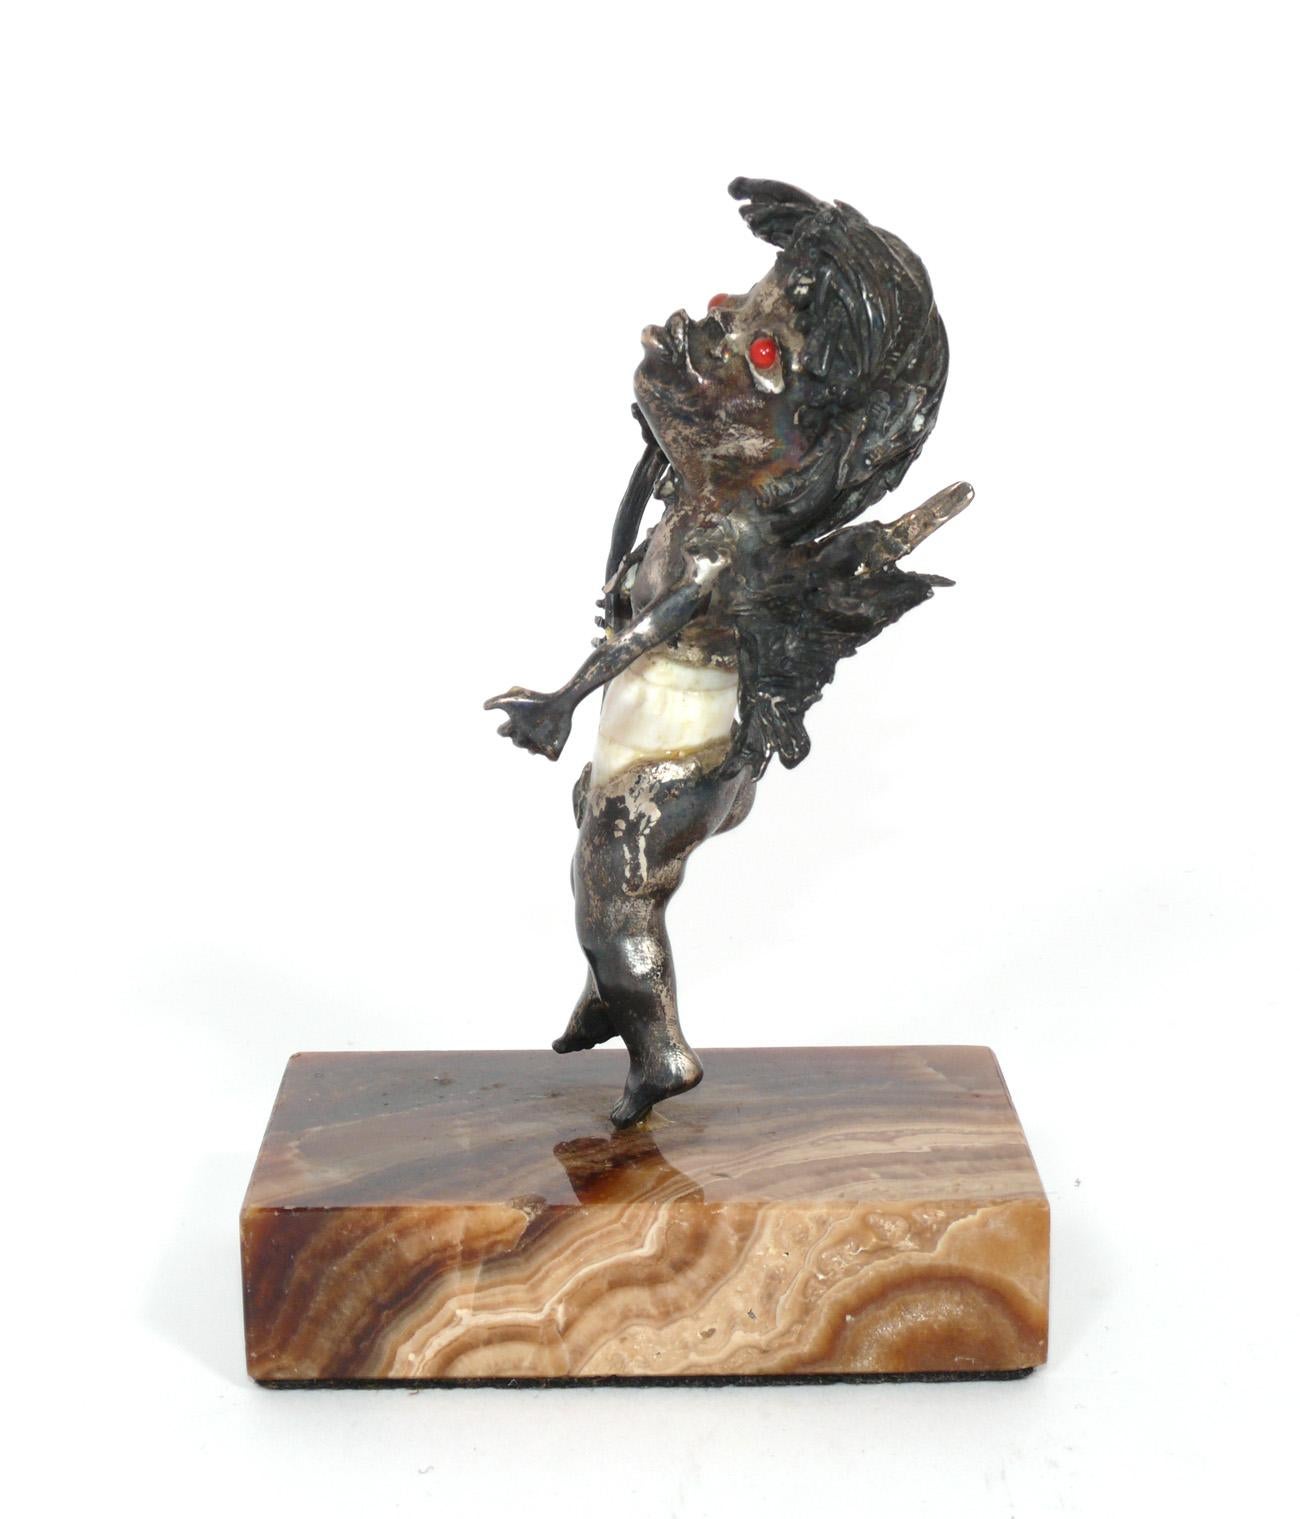 Skulptur einer schelmischen Kreatur, von Aurelio Teno, unsigniert, spanisch, um 1960. Gefertigt aus einer Muschel, silberner oder versilberter Bronze und Augen aus Halbedelsteinen auf einem Achatsockel. Behält die warme Originalpatina.